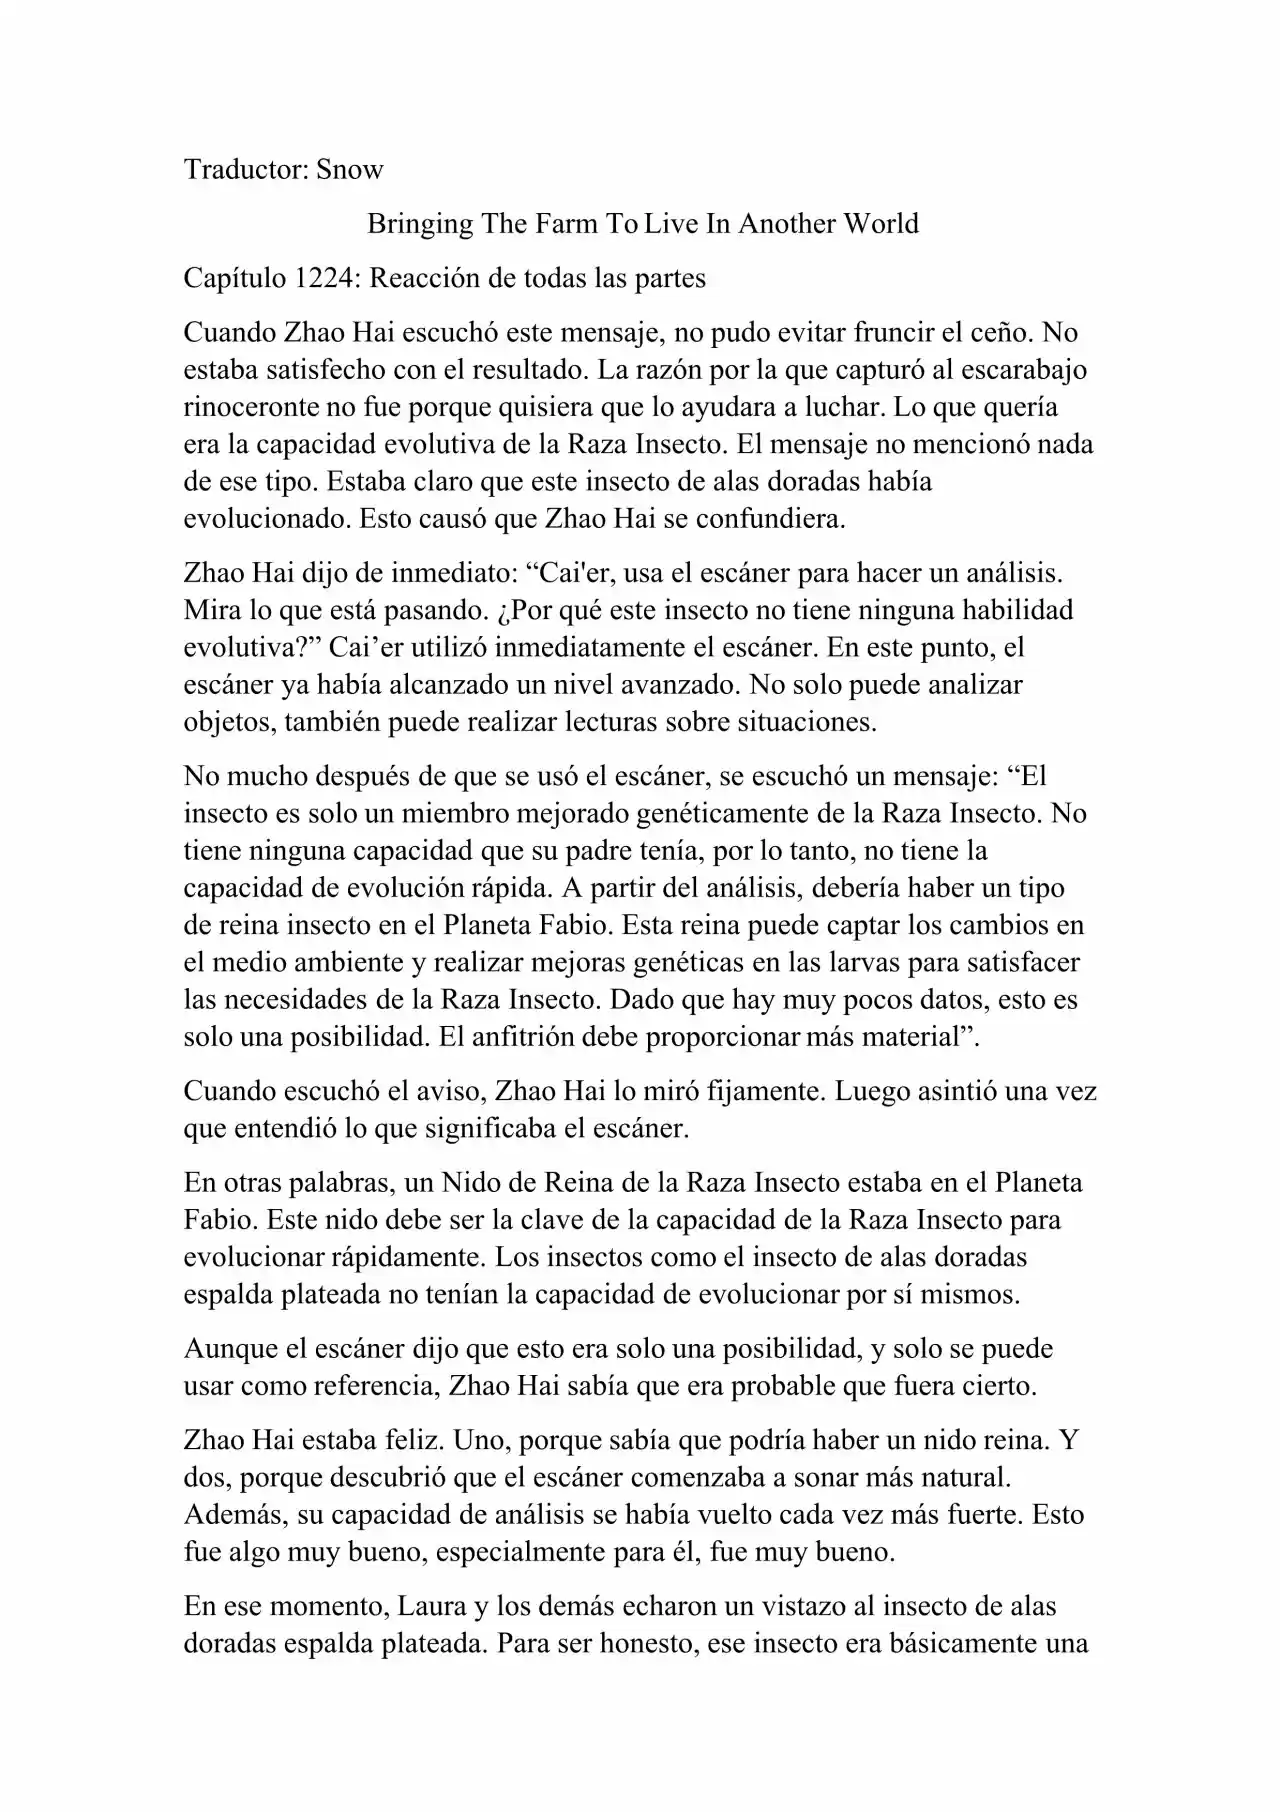 Llevando La Granja Para Vivir En Otro Mundo (Novela: Chapter 1224 - Page 1